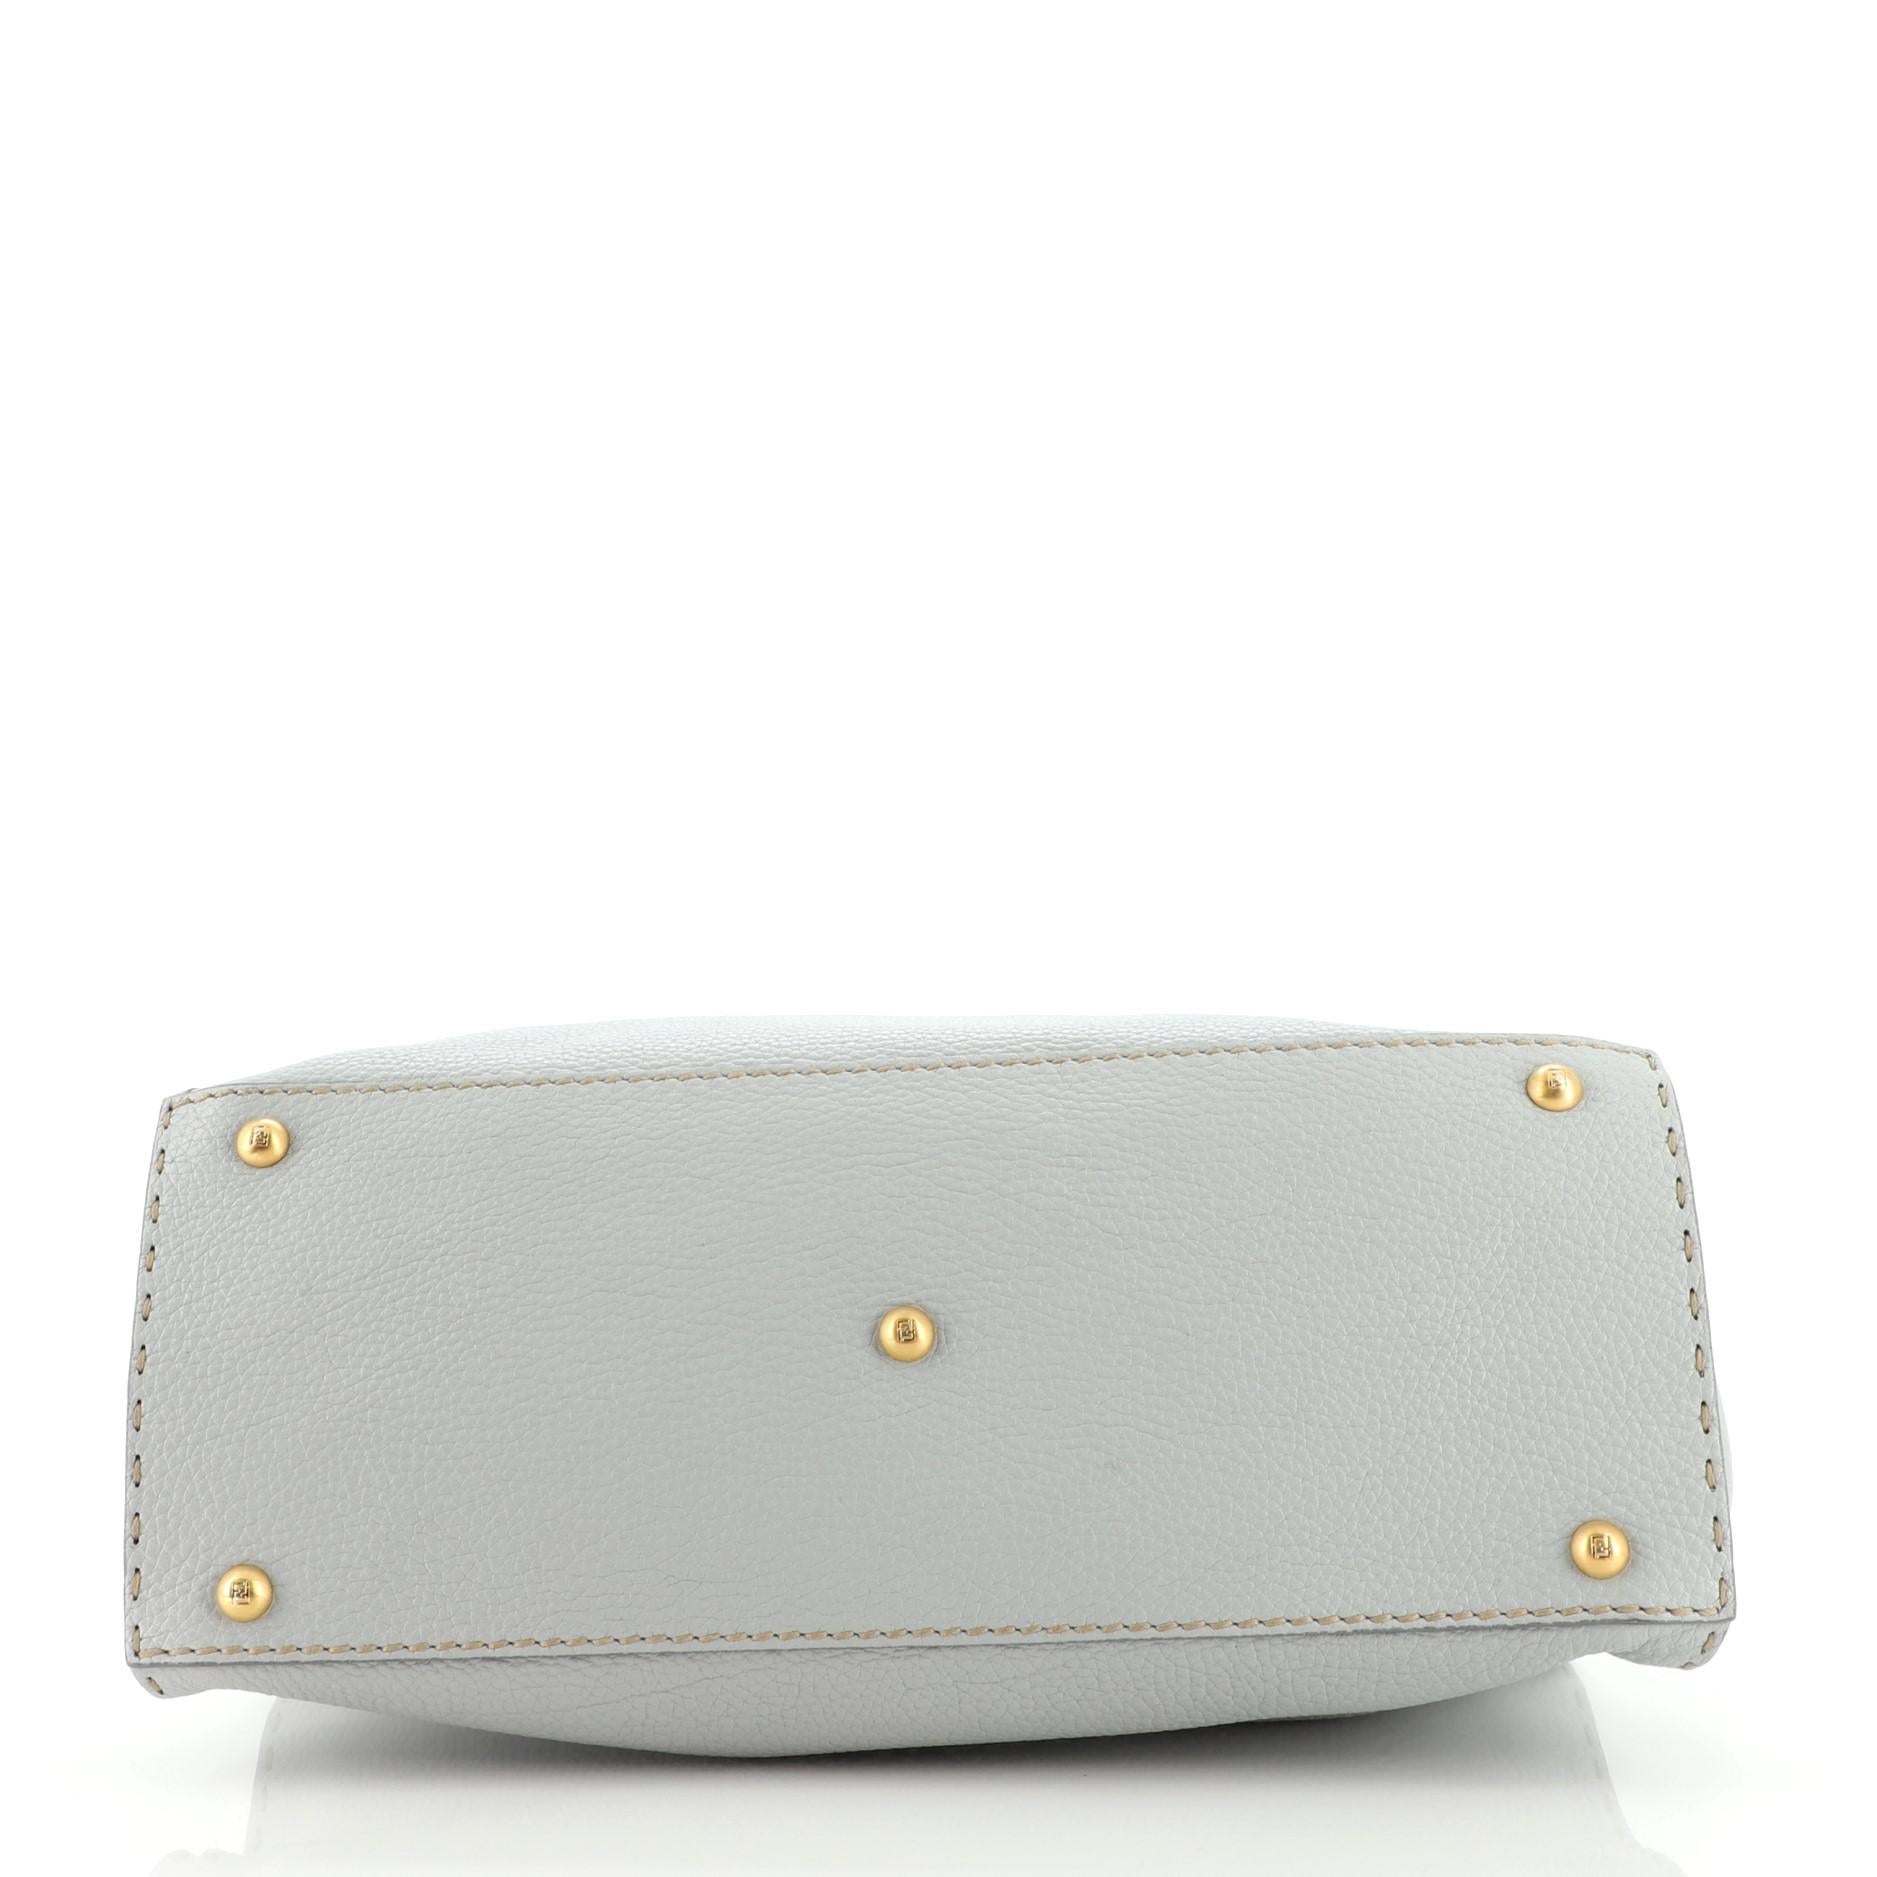 Fendi Selleria Firenze Handbag Leather Medium In Good Condition In NY, NY